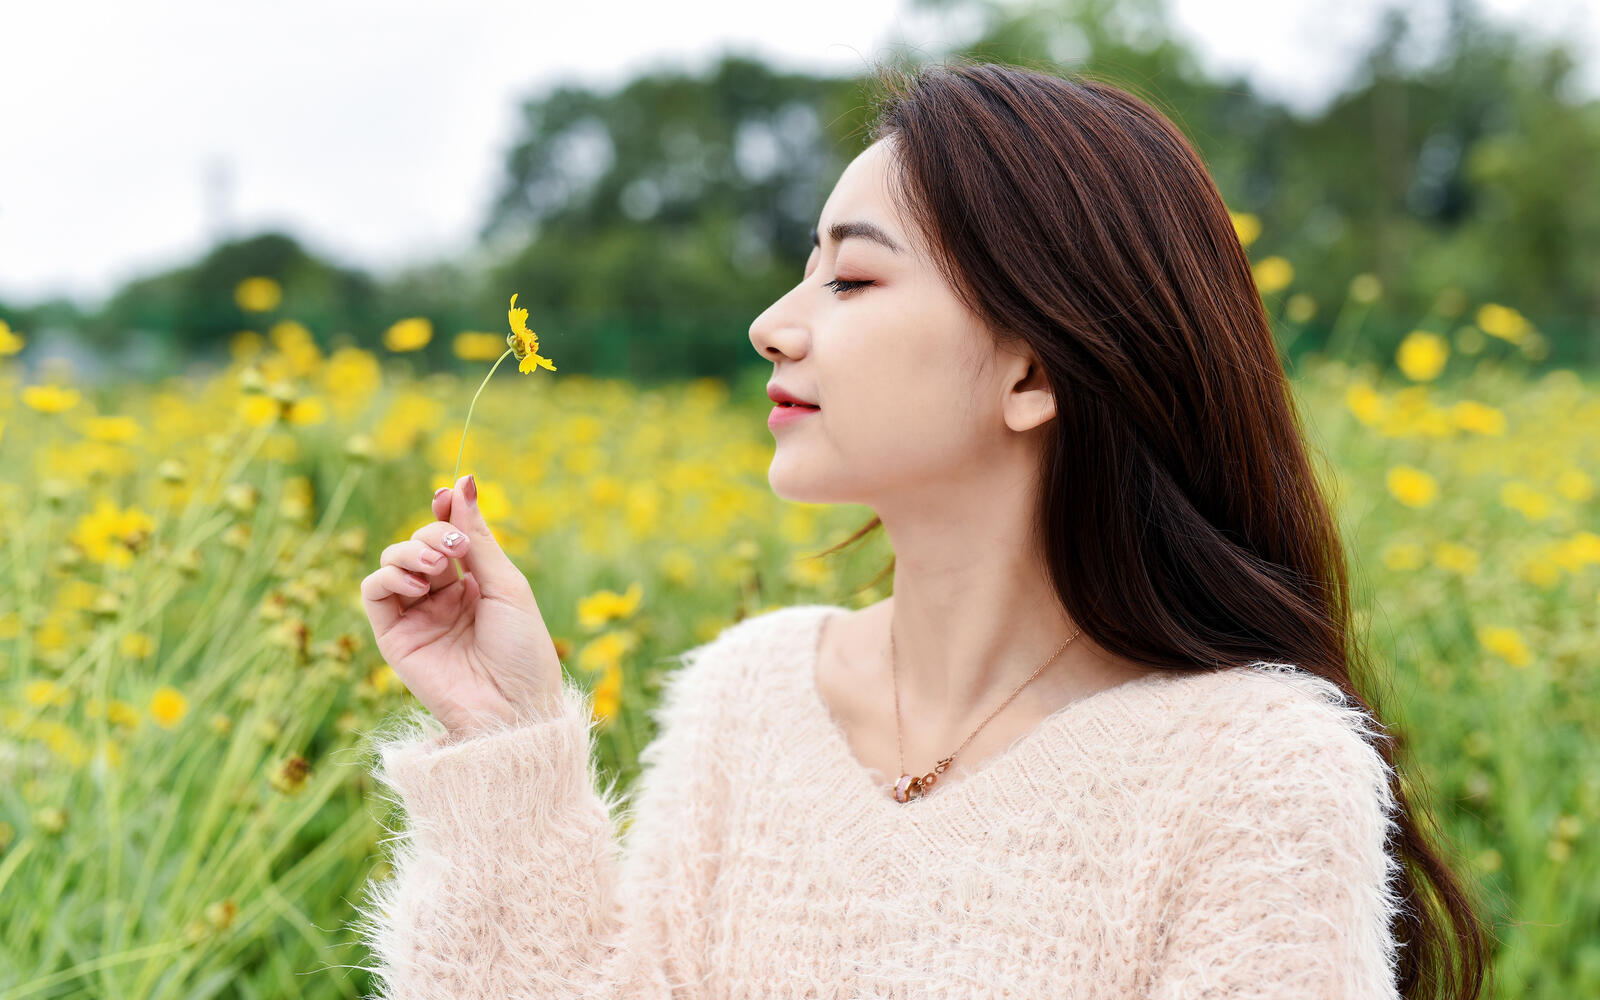 Бесплатное фото Китайская девушка на поле с желтыми цветами